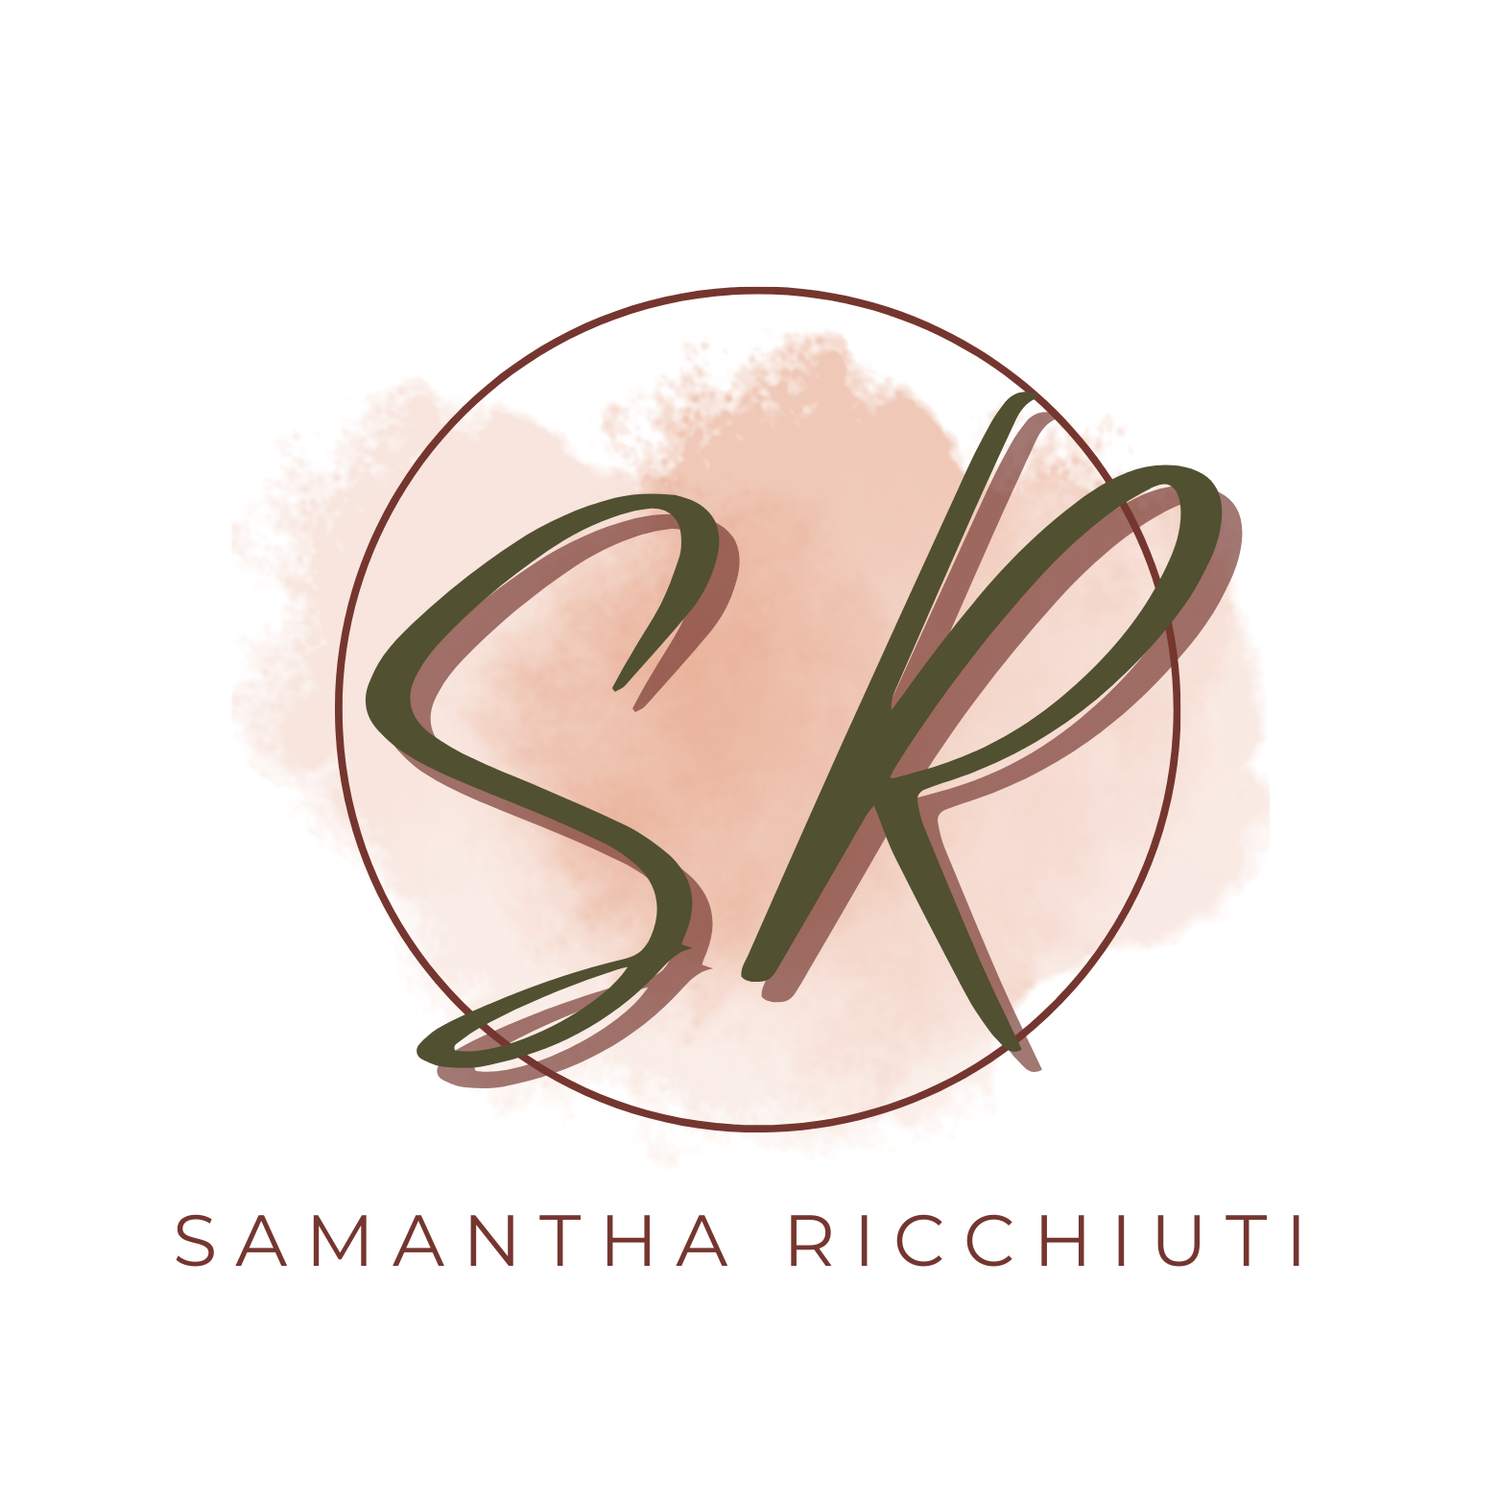 Samantha Ricchiuti